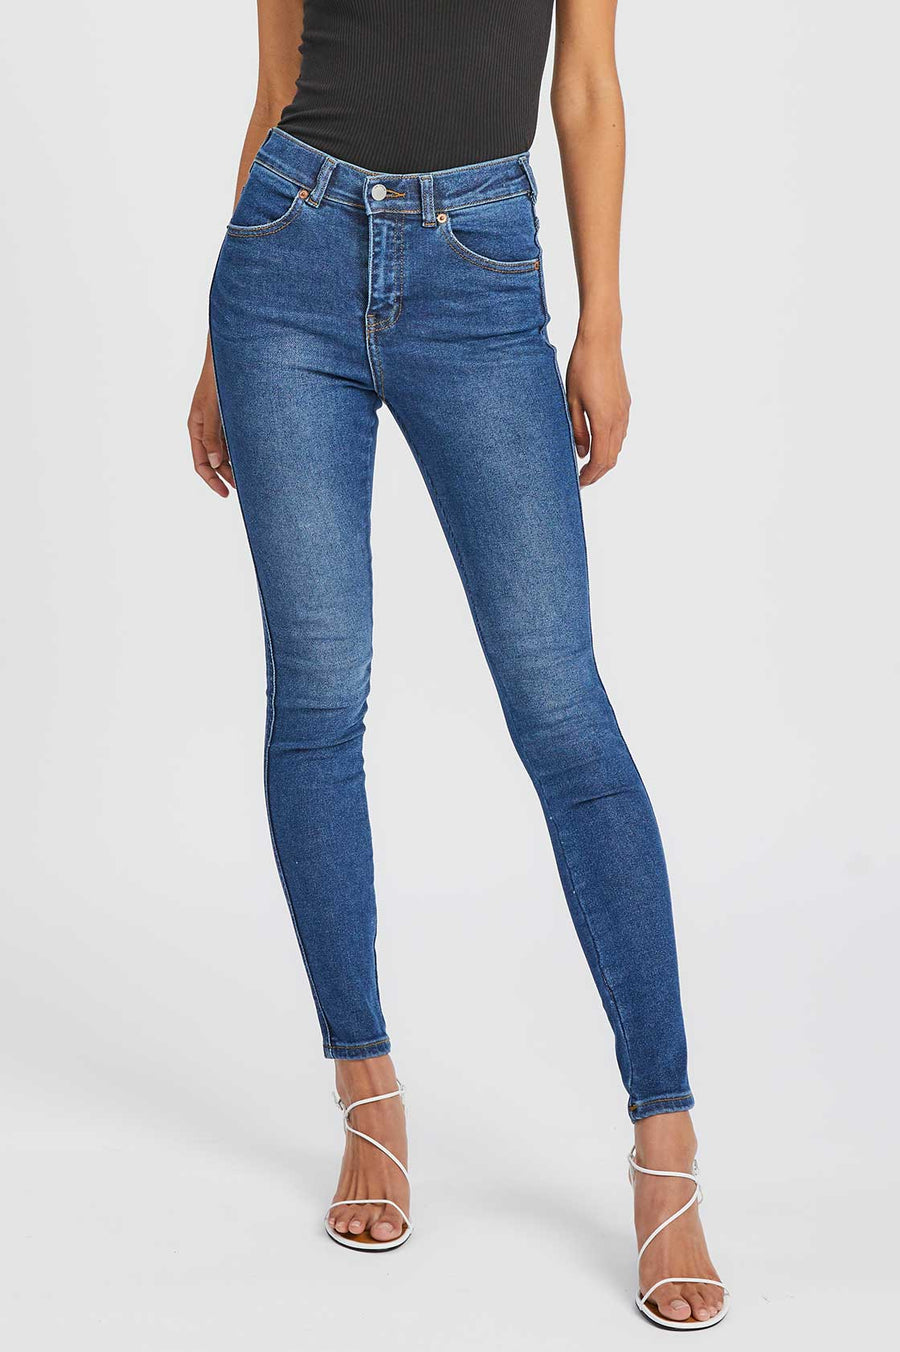 Lexy Jeans Westcoast Dark Blue - Dr Denim Jeans - Australia & NZ